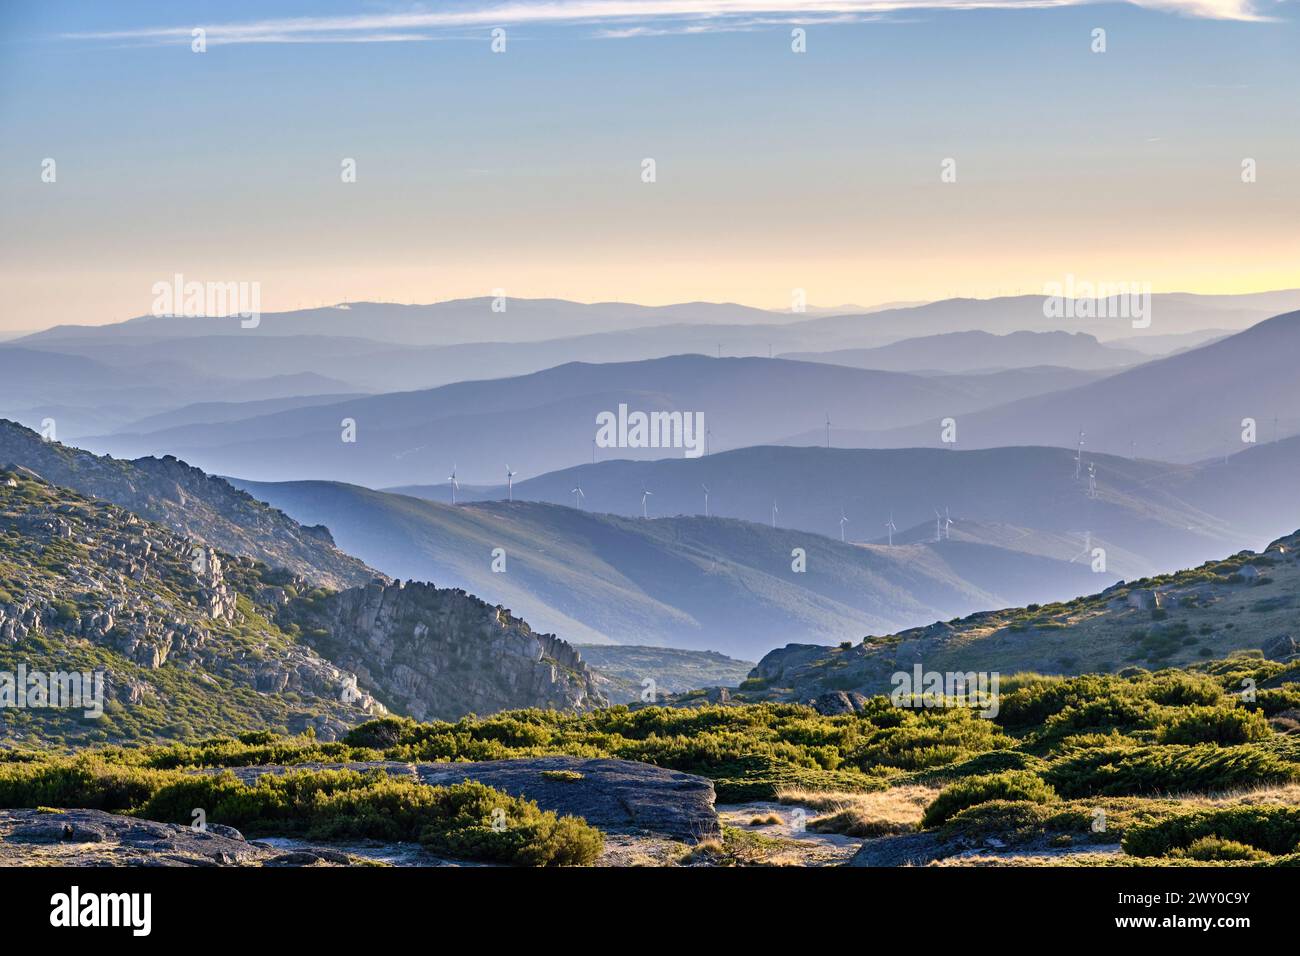 Sentieri per la catena montuosa dell'Acor. Parco naturale Serra da Estrela, Portogallo Foto Stock